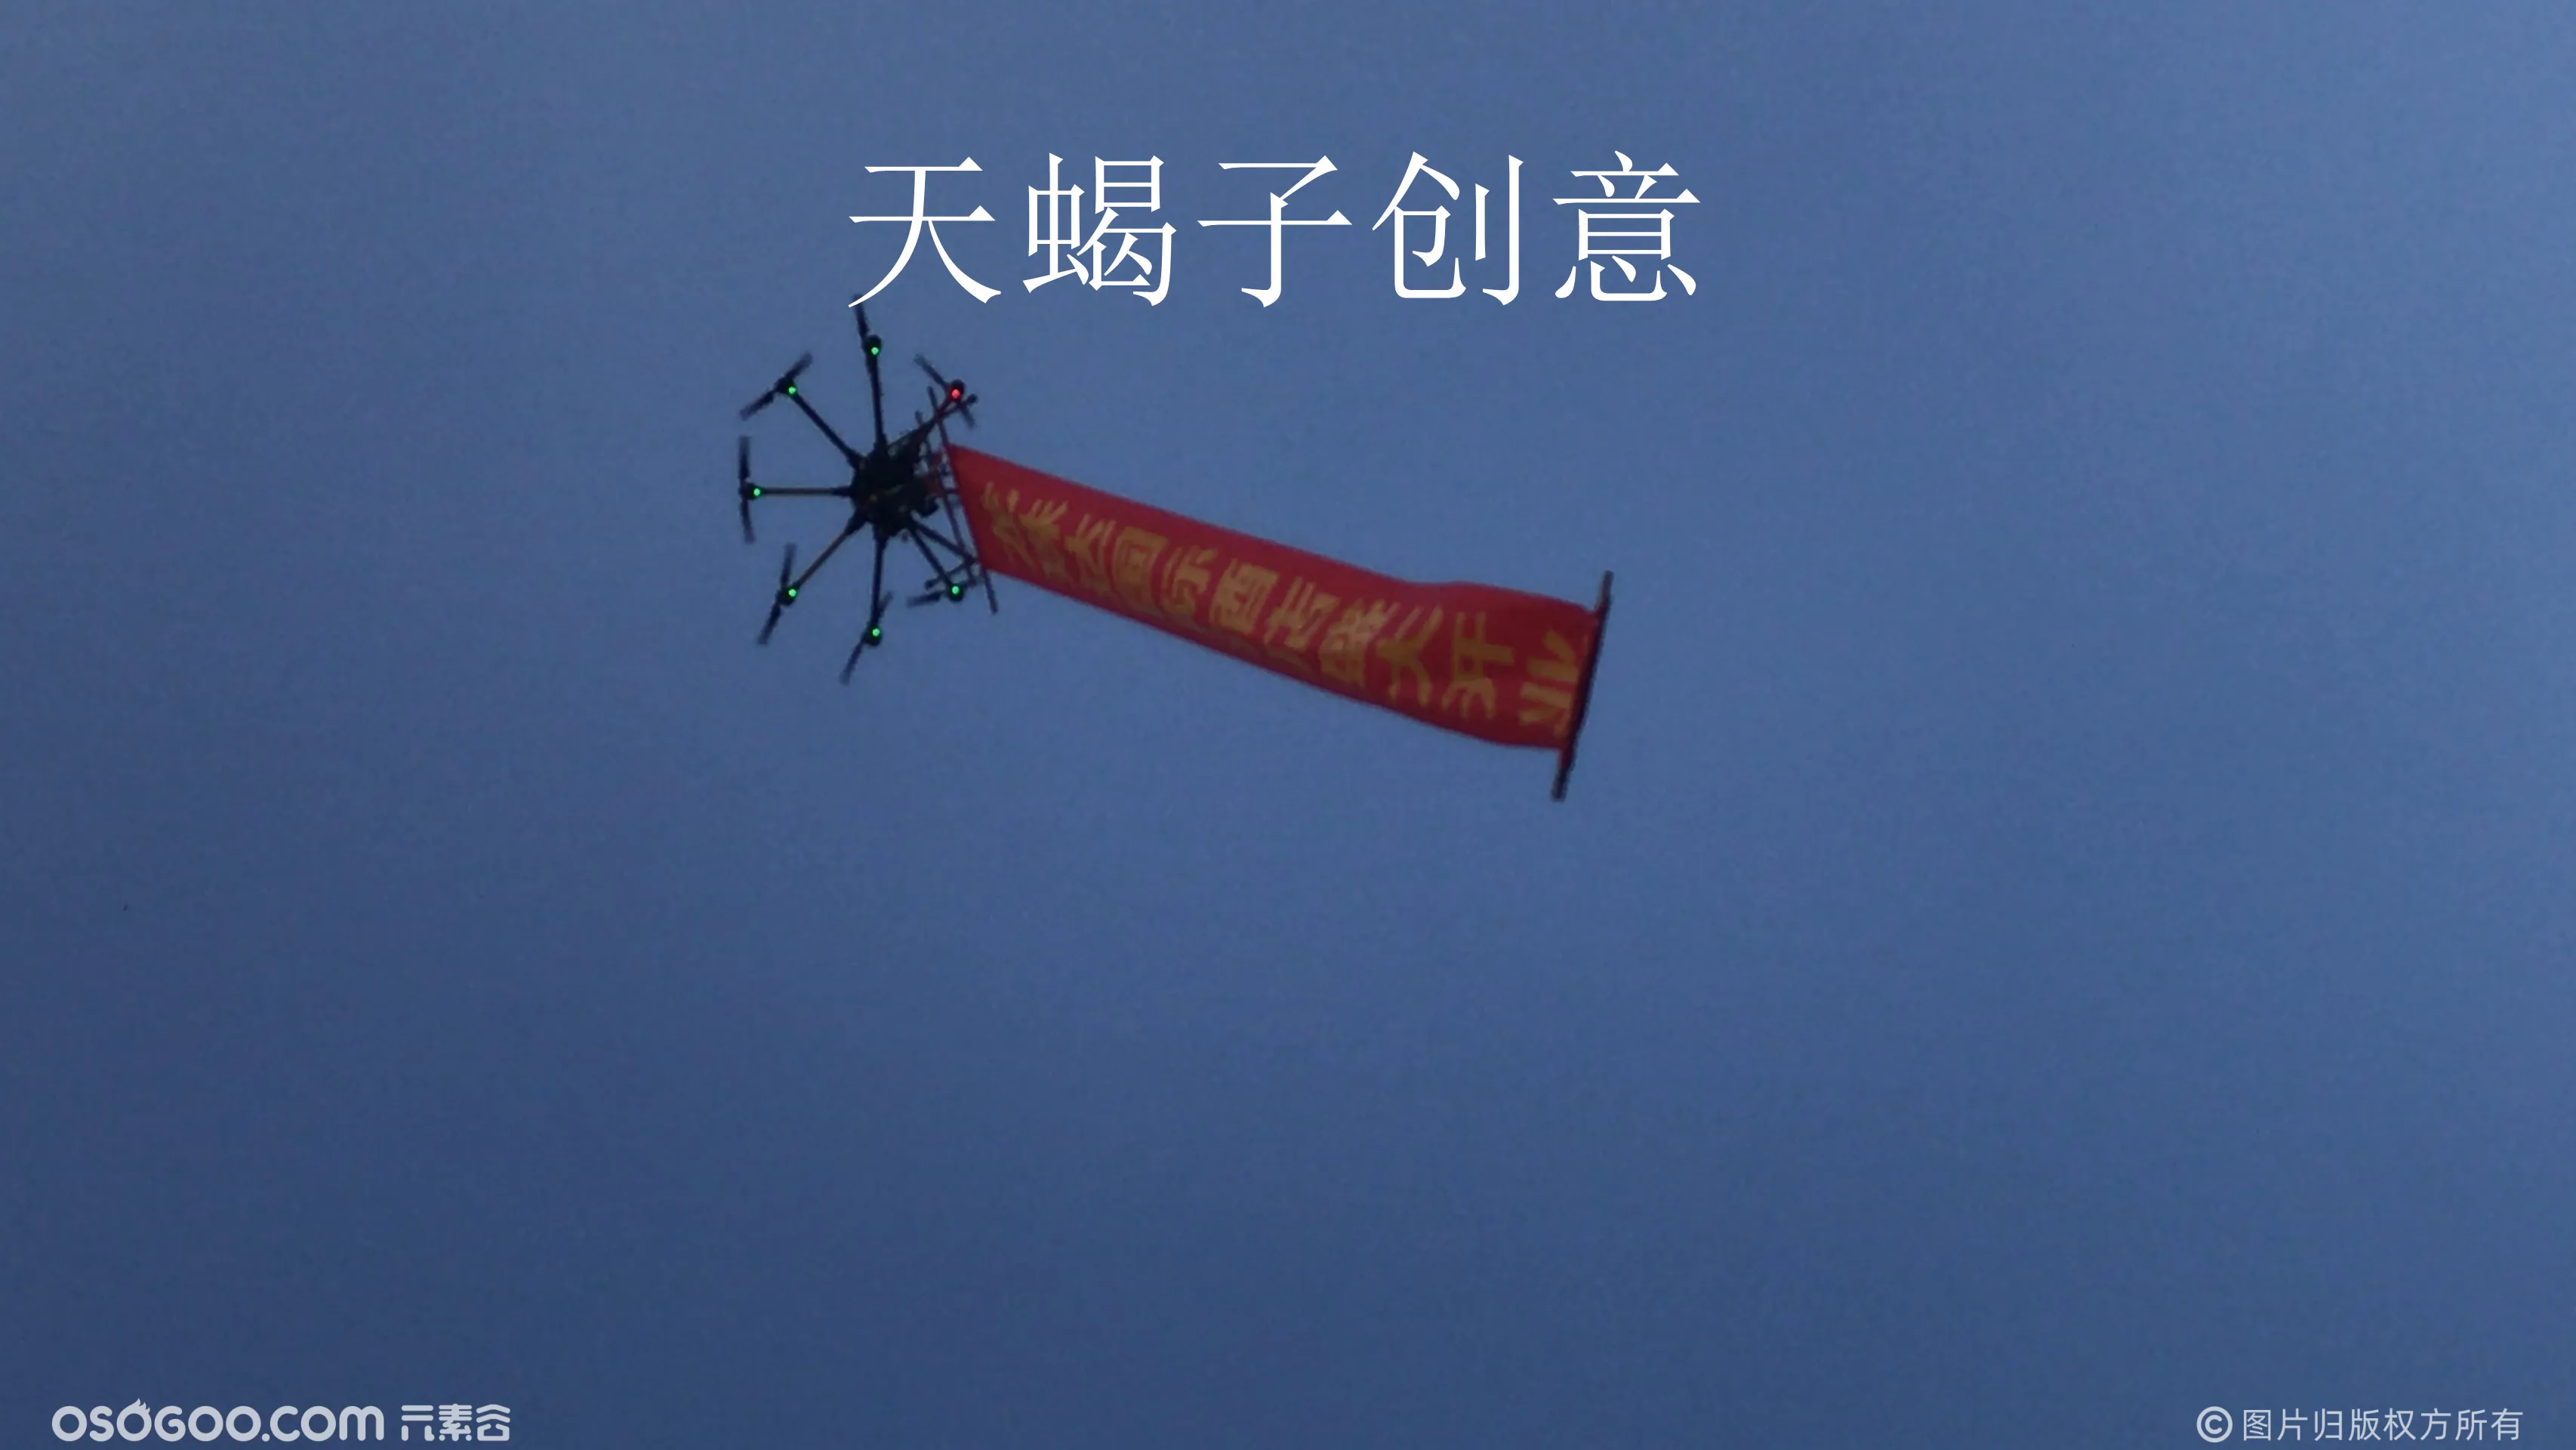 无人机吊物挂横幅 无人机表演 天蝎子创意